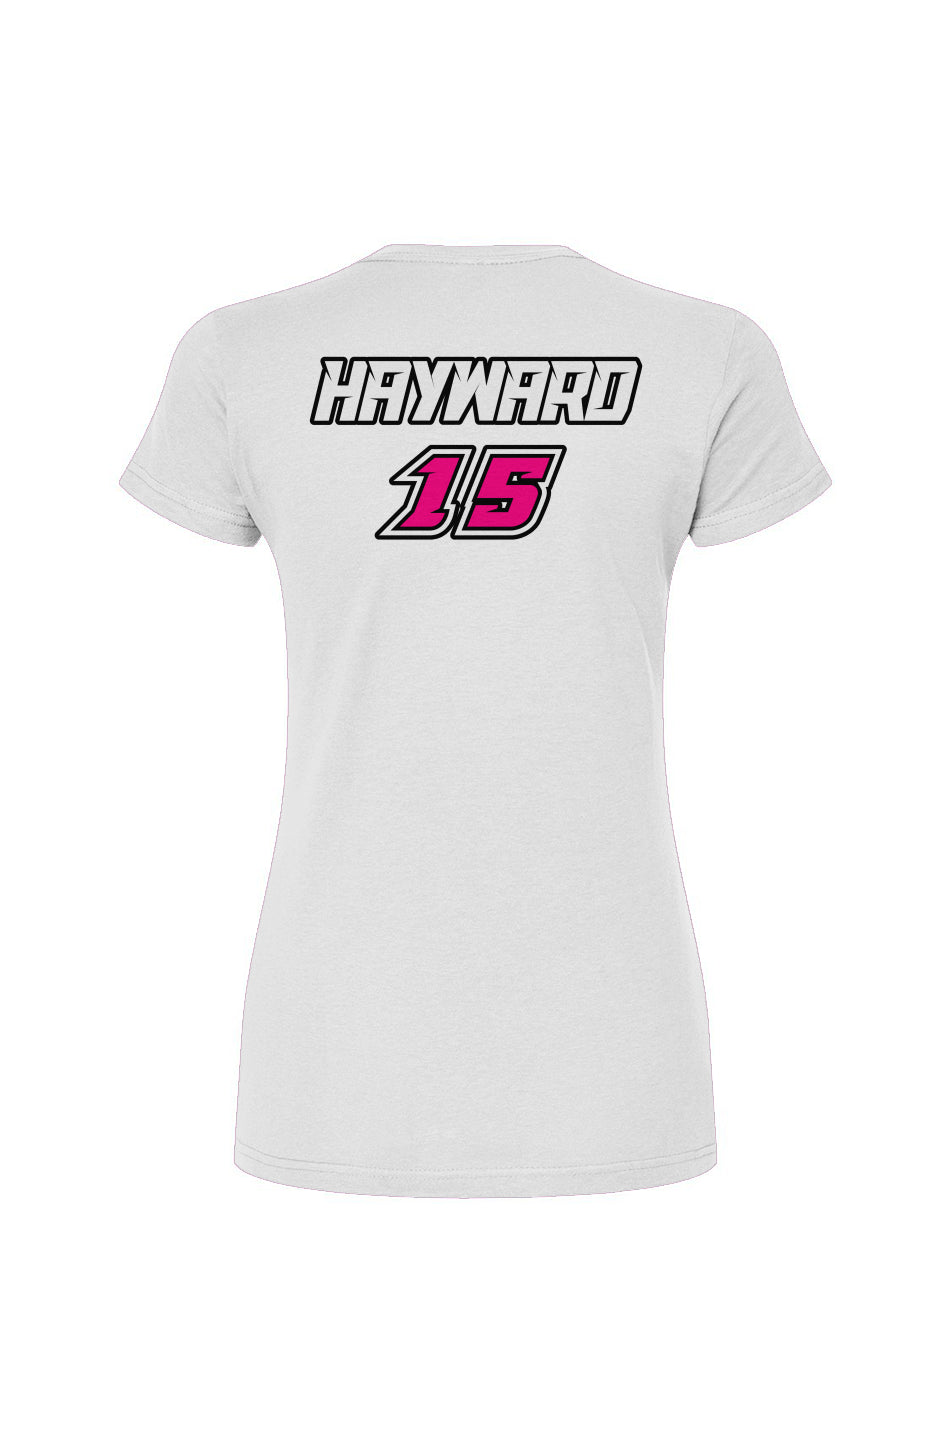 Women's T-Shirt | Kendra Hayward